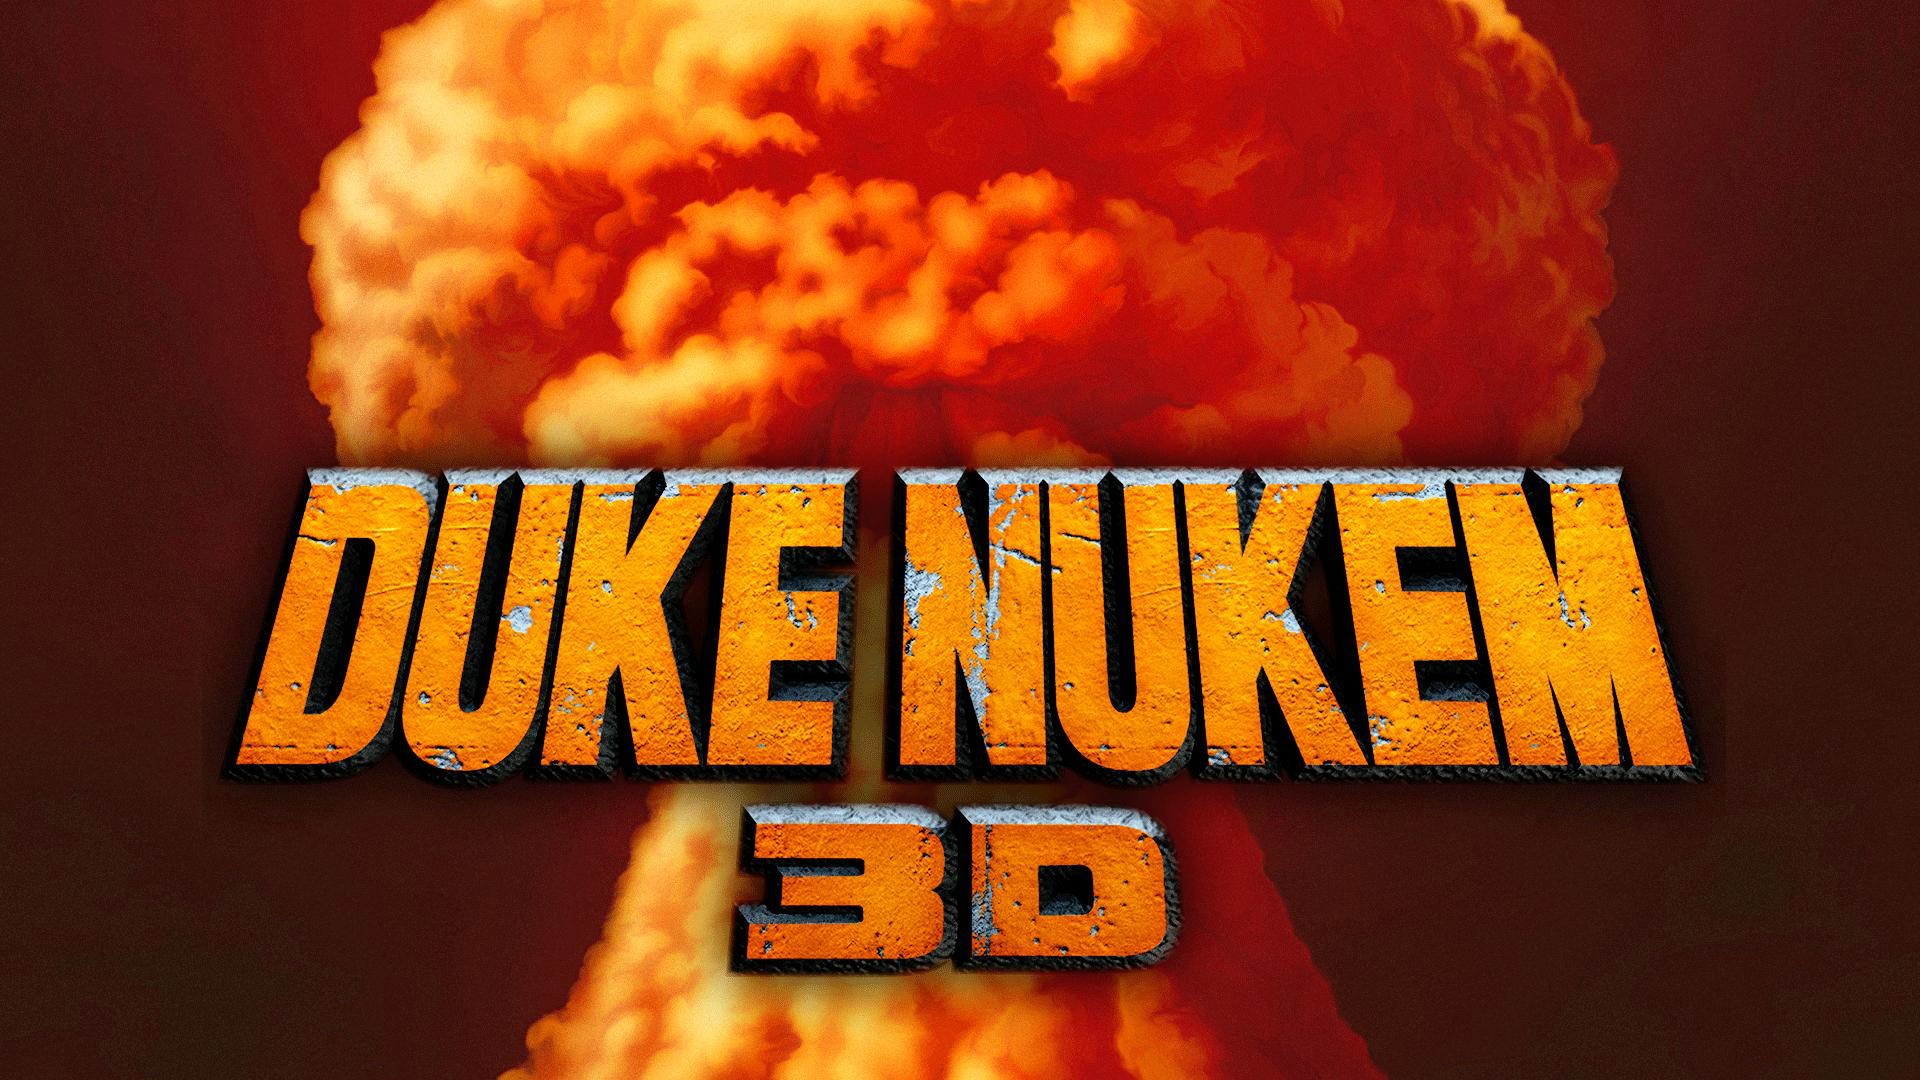 Video Game Duke Nukem 3D HD Wallpaper | Background Image